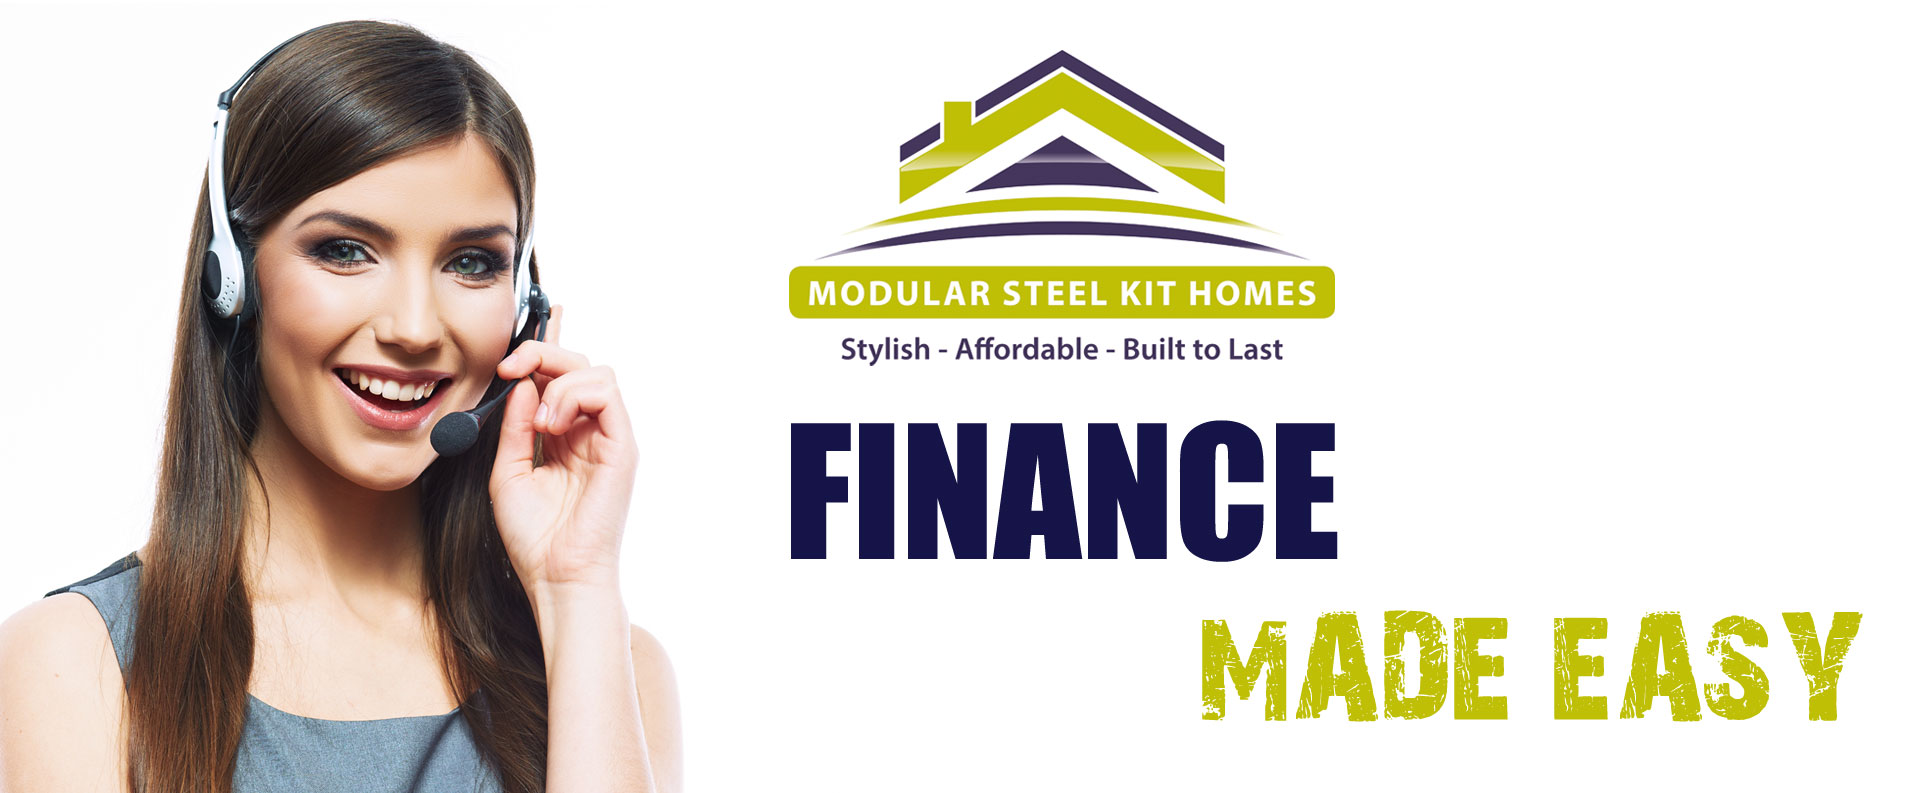 Modular Steel Kit Homes Finance